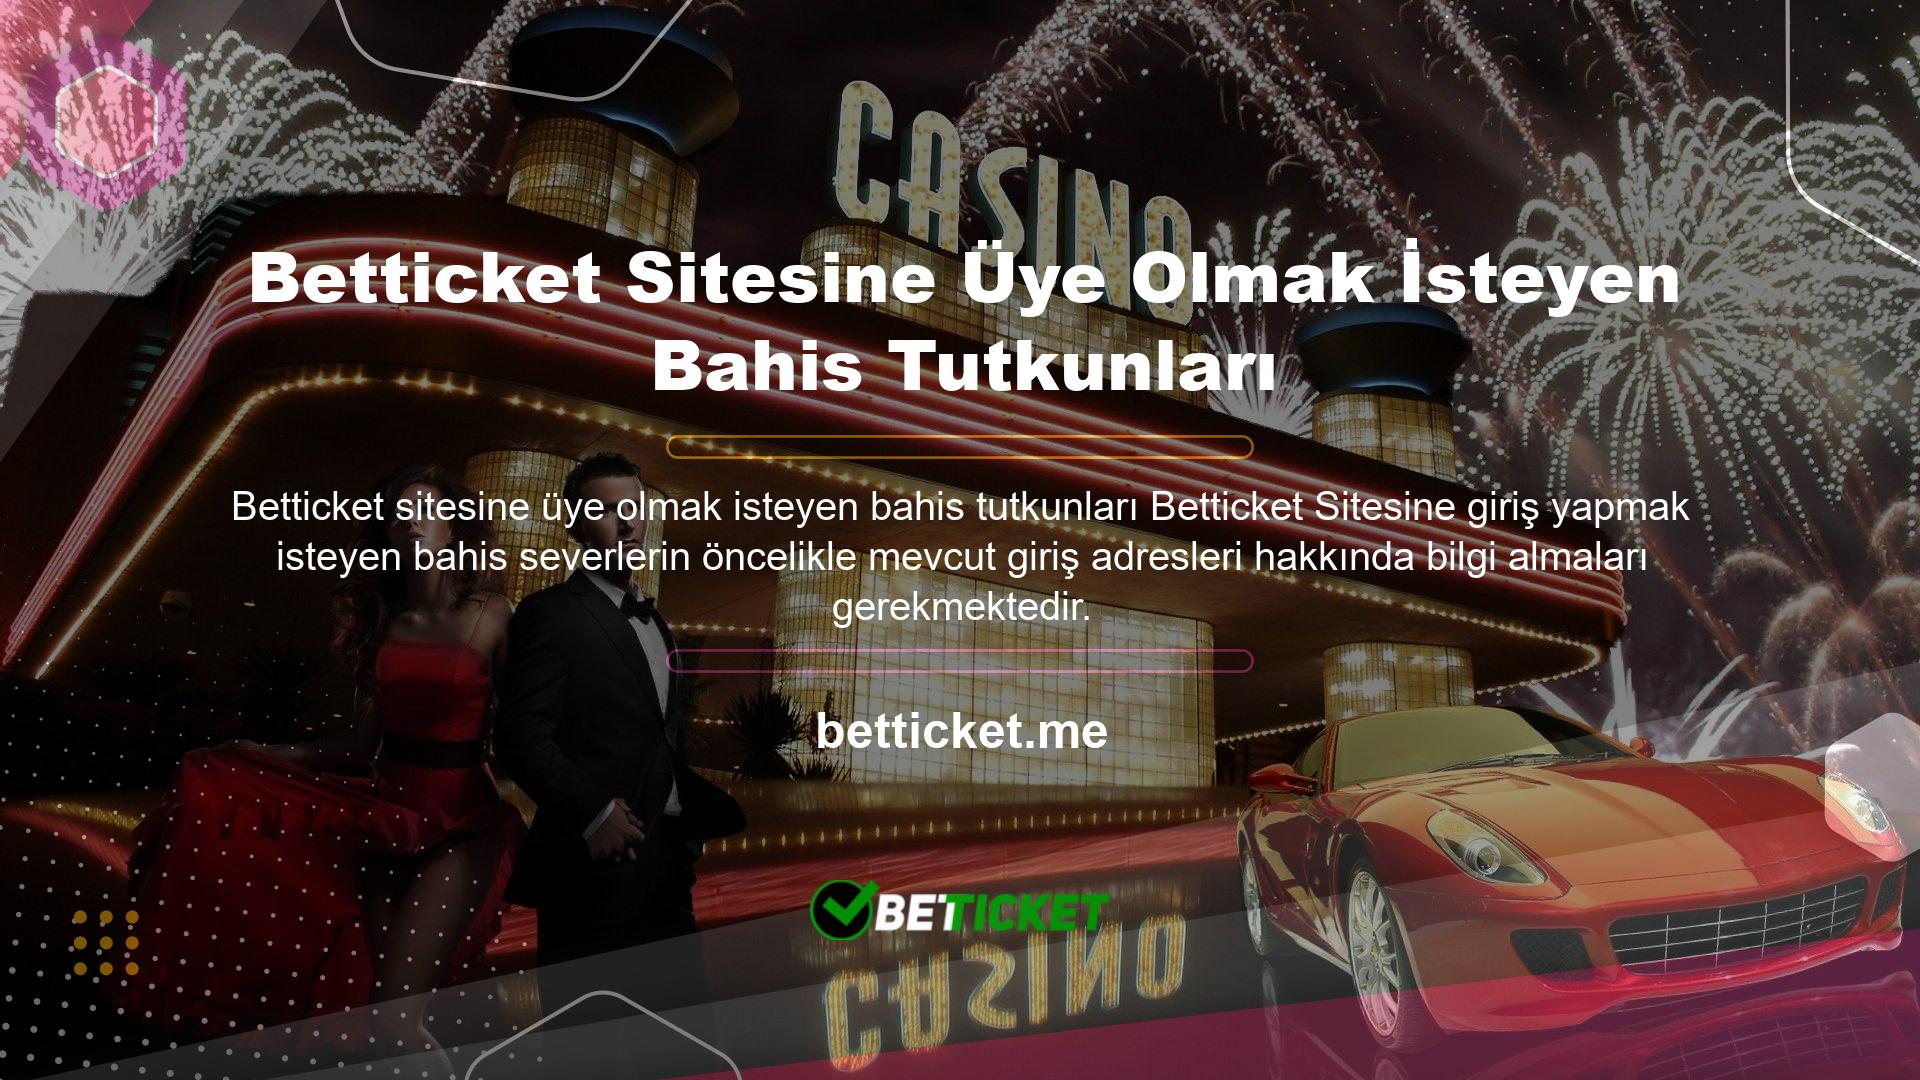 Online casino siteleri Türkiye'de yasal olarak faaliyet göstermemektedir ve site kullanıcılarının ve sitelerin güvenliğini sağlamak için zaman zaman adresler değişmektedir